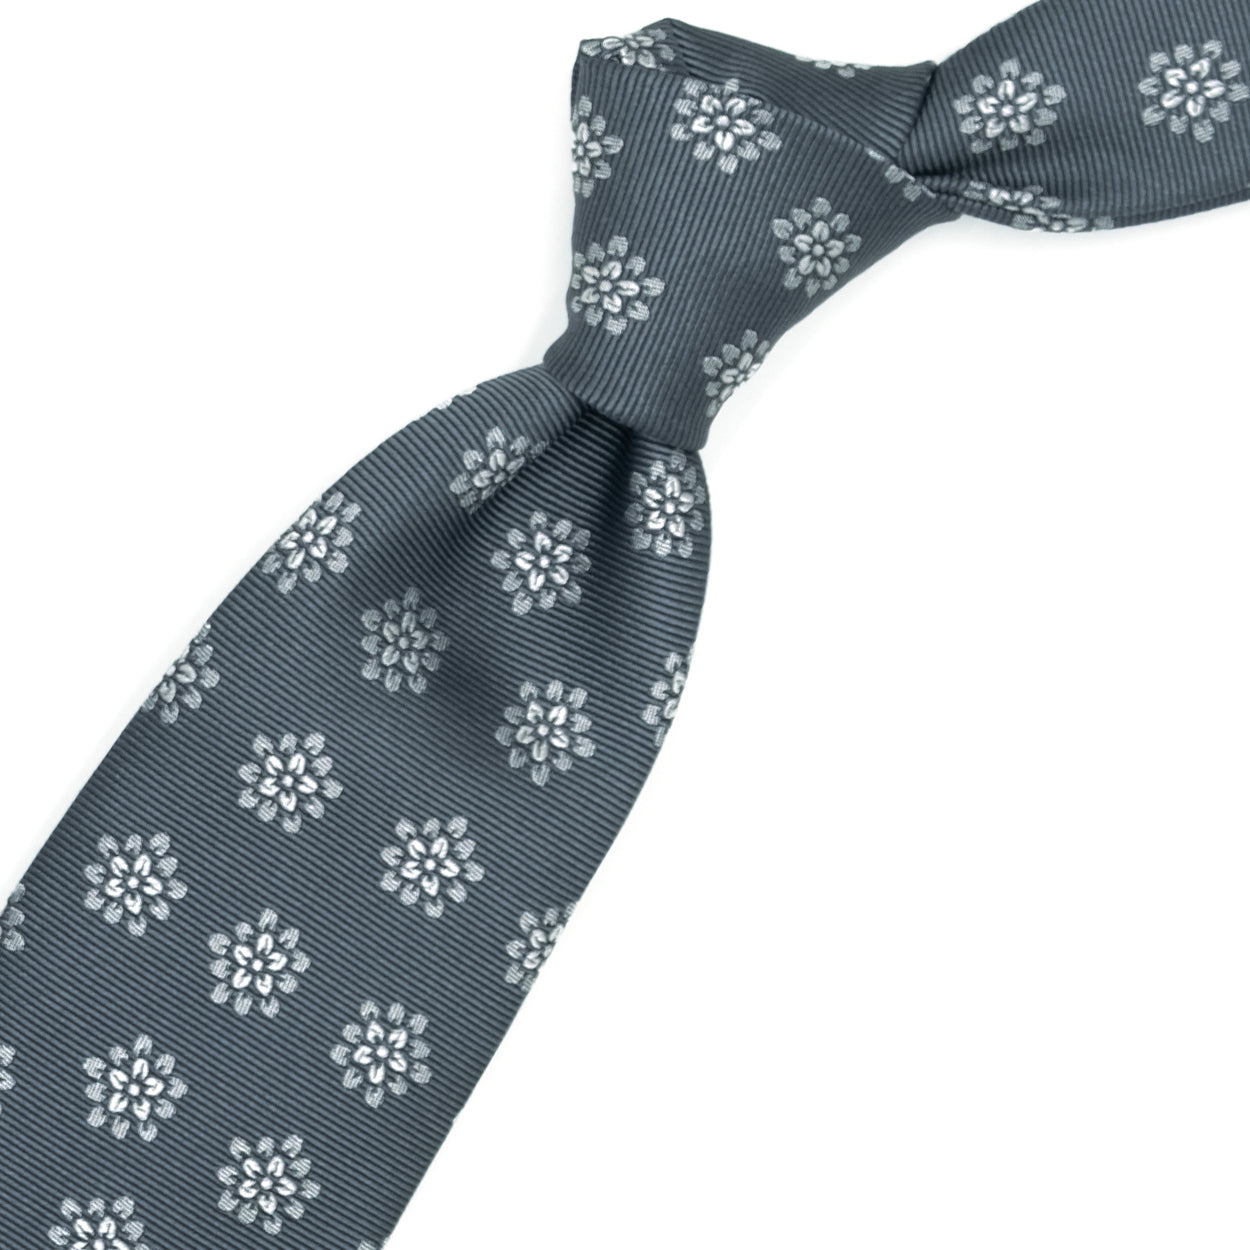 Grey tie with light grey flowers